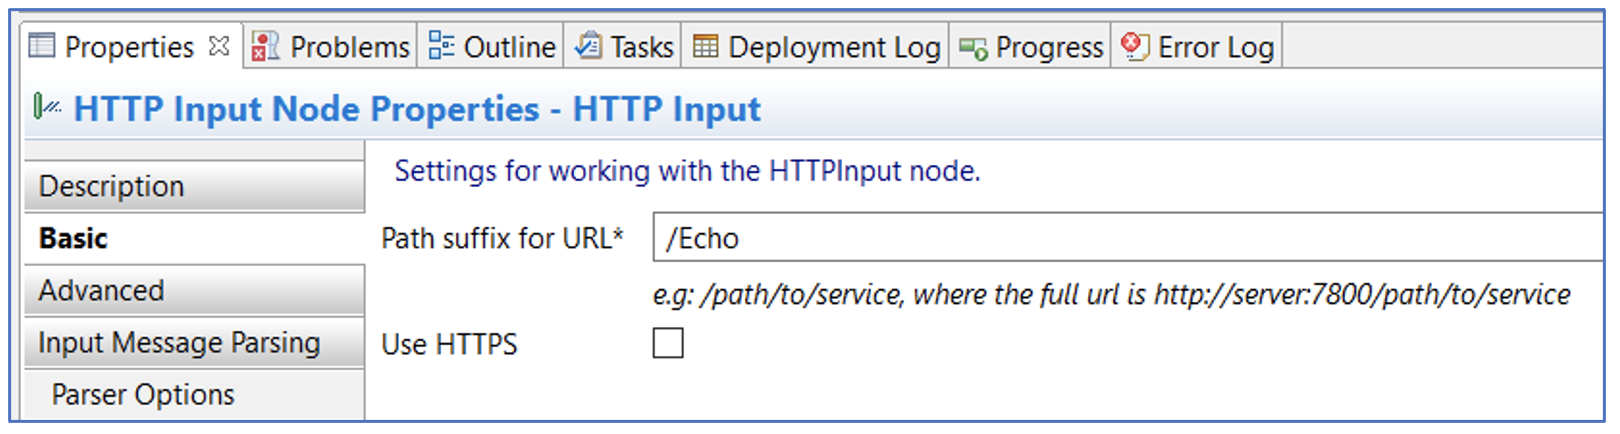 HTTP Input Node Properties